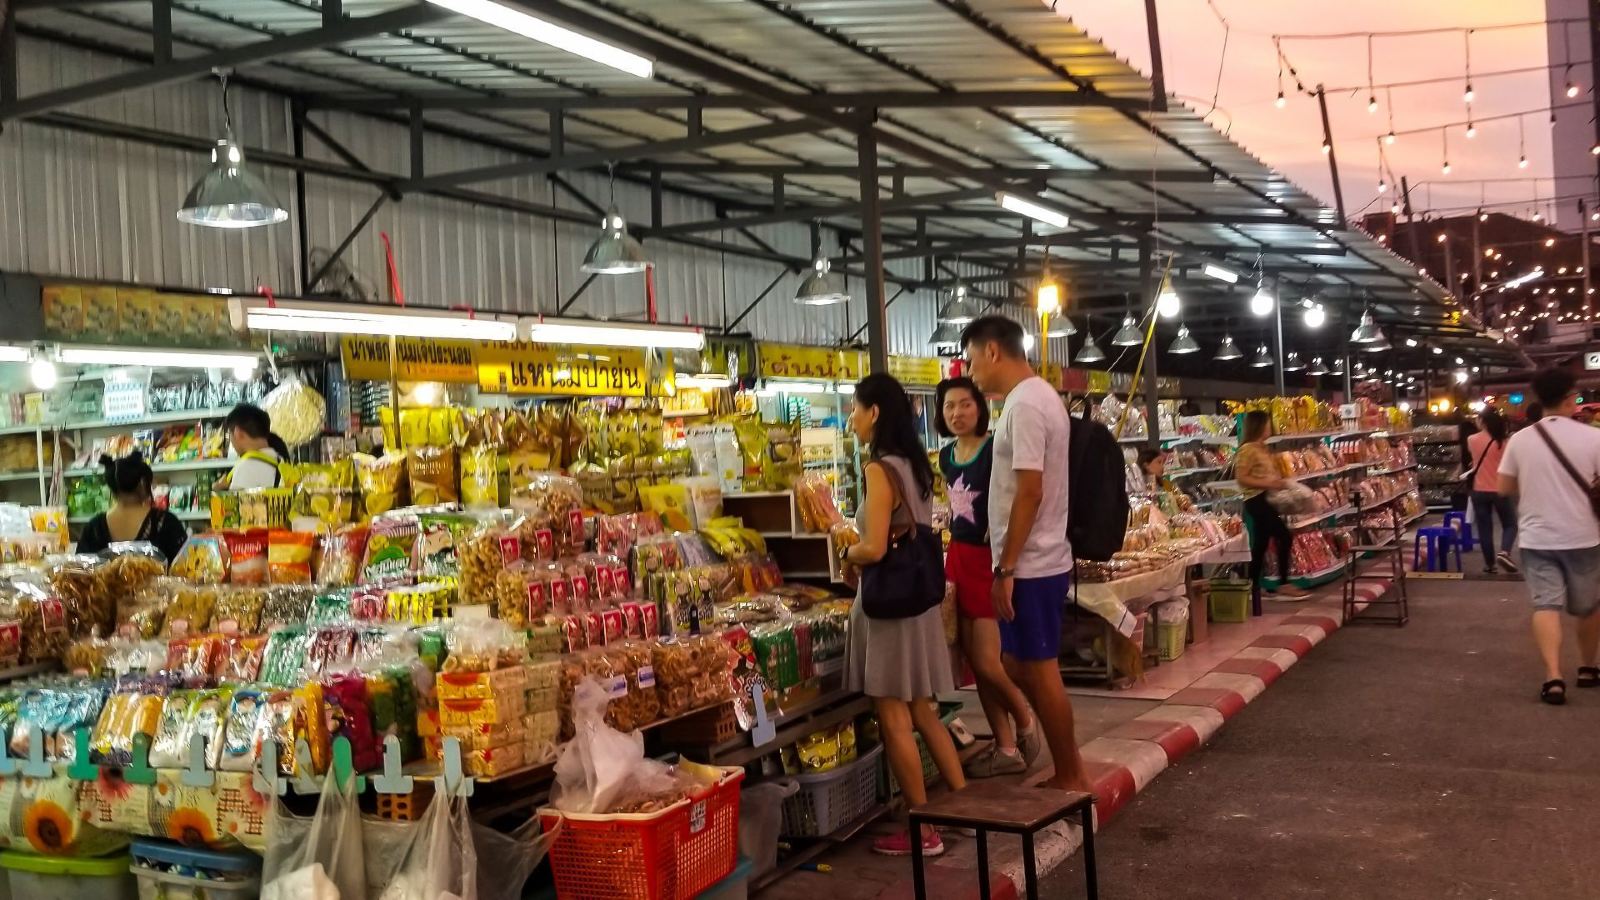 泰国曼谷 帕蓬夜市 ตลาดกลางคืนพัฒน์พงษ์